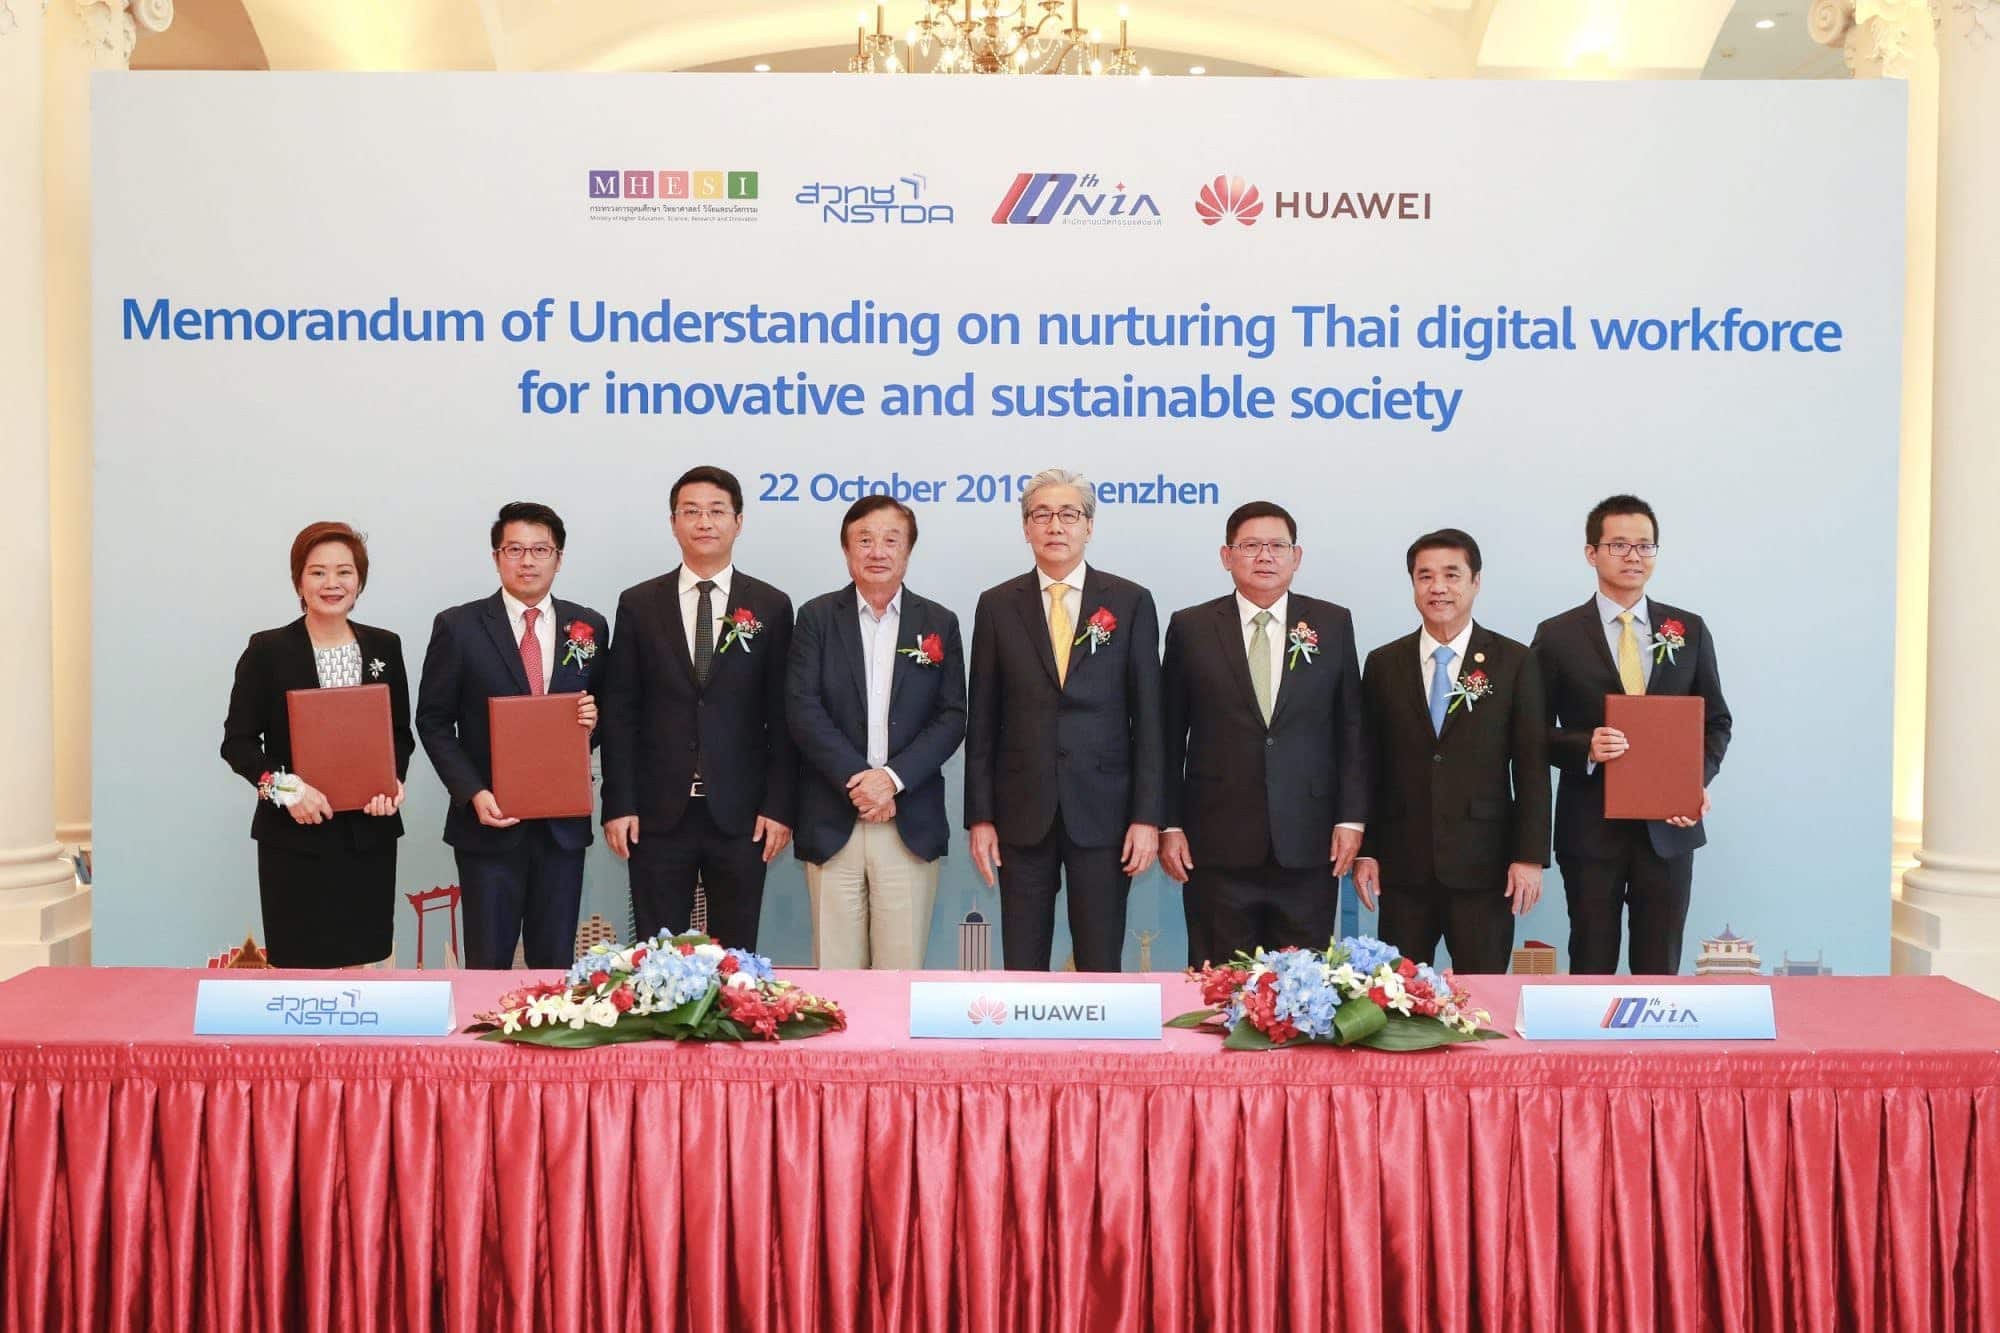 รองนายกรัฐมนตรี ดร.สมคิด จาตุศรีพิทักษ์ พร้อมต้อนรับ 5G HUAWEI เร่งพัฒนา 5G+AI ในประเทศไทย 1